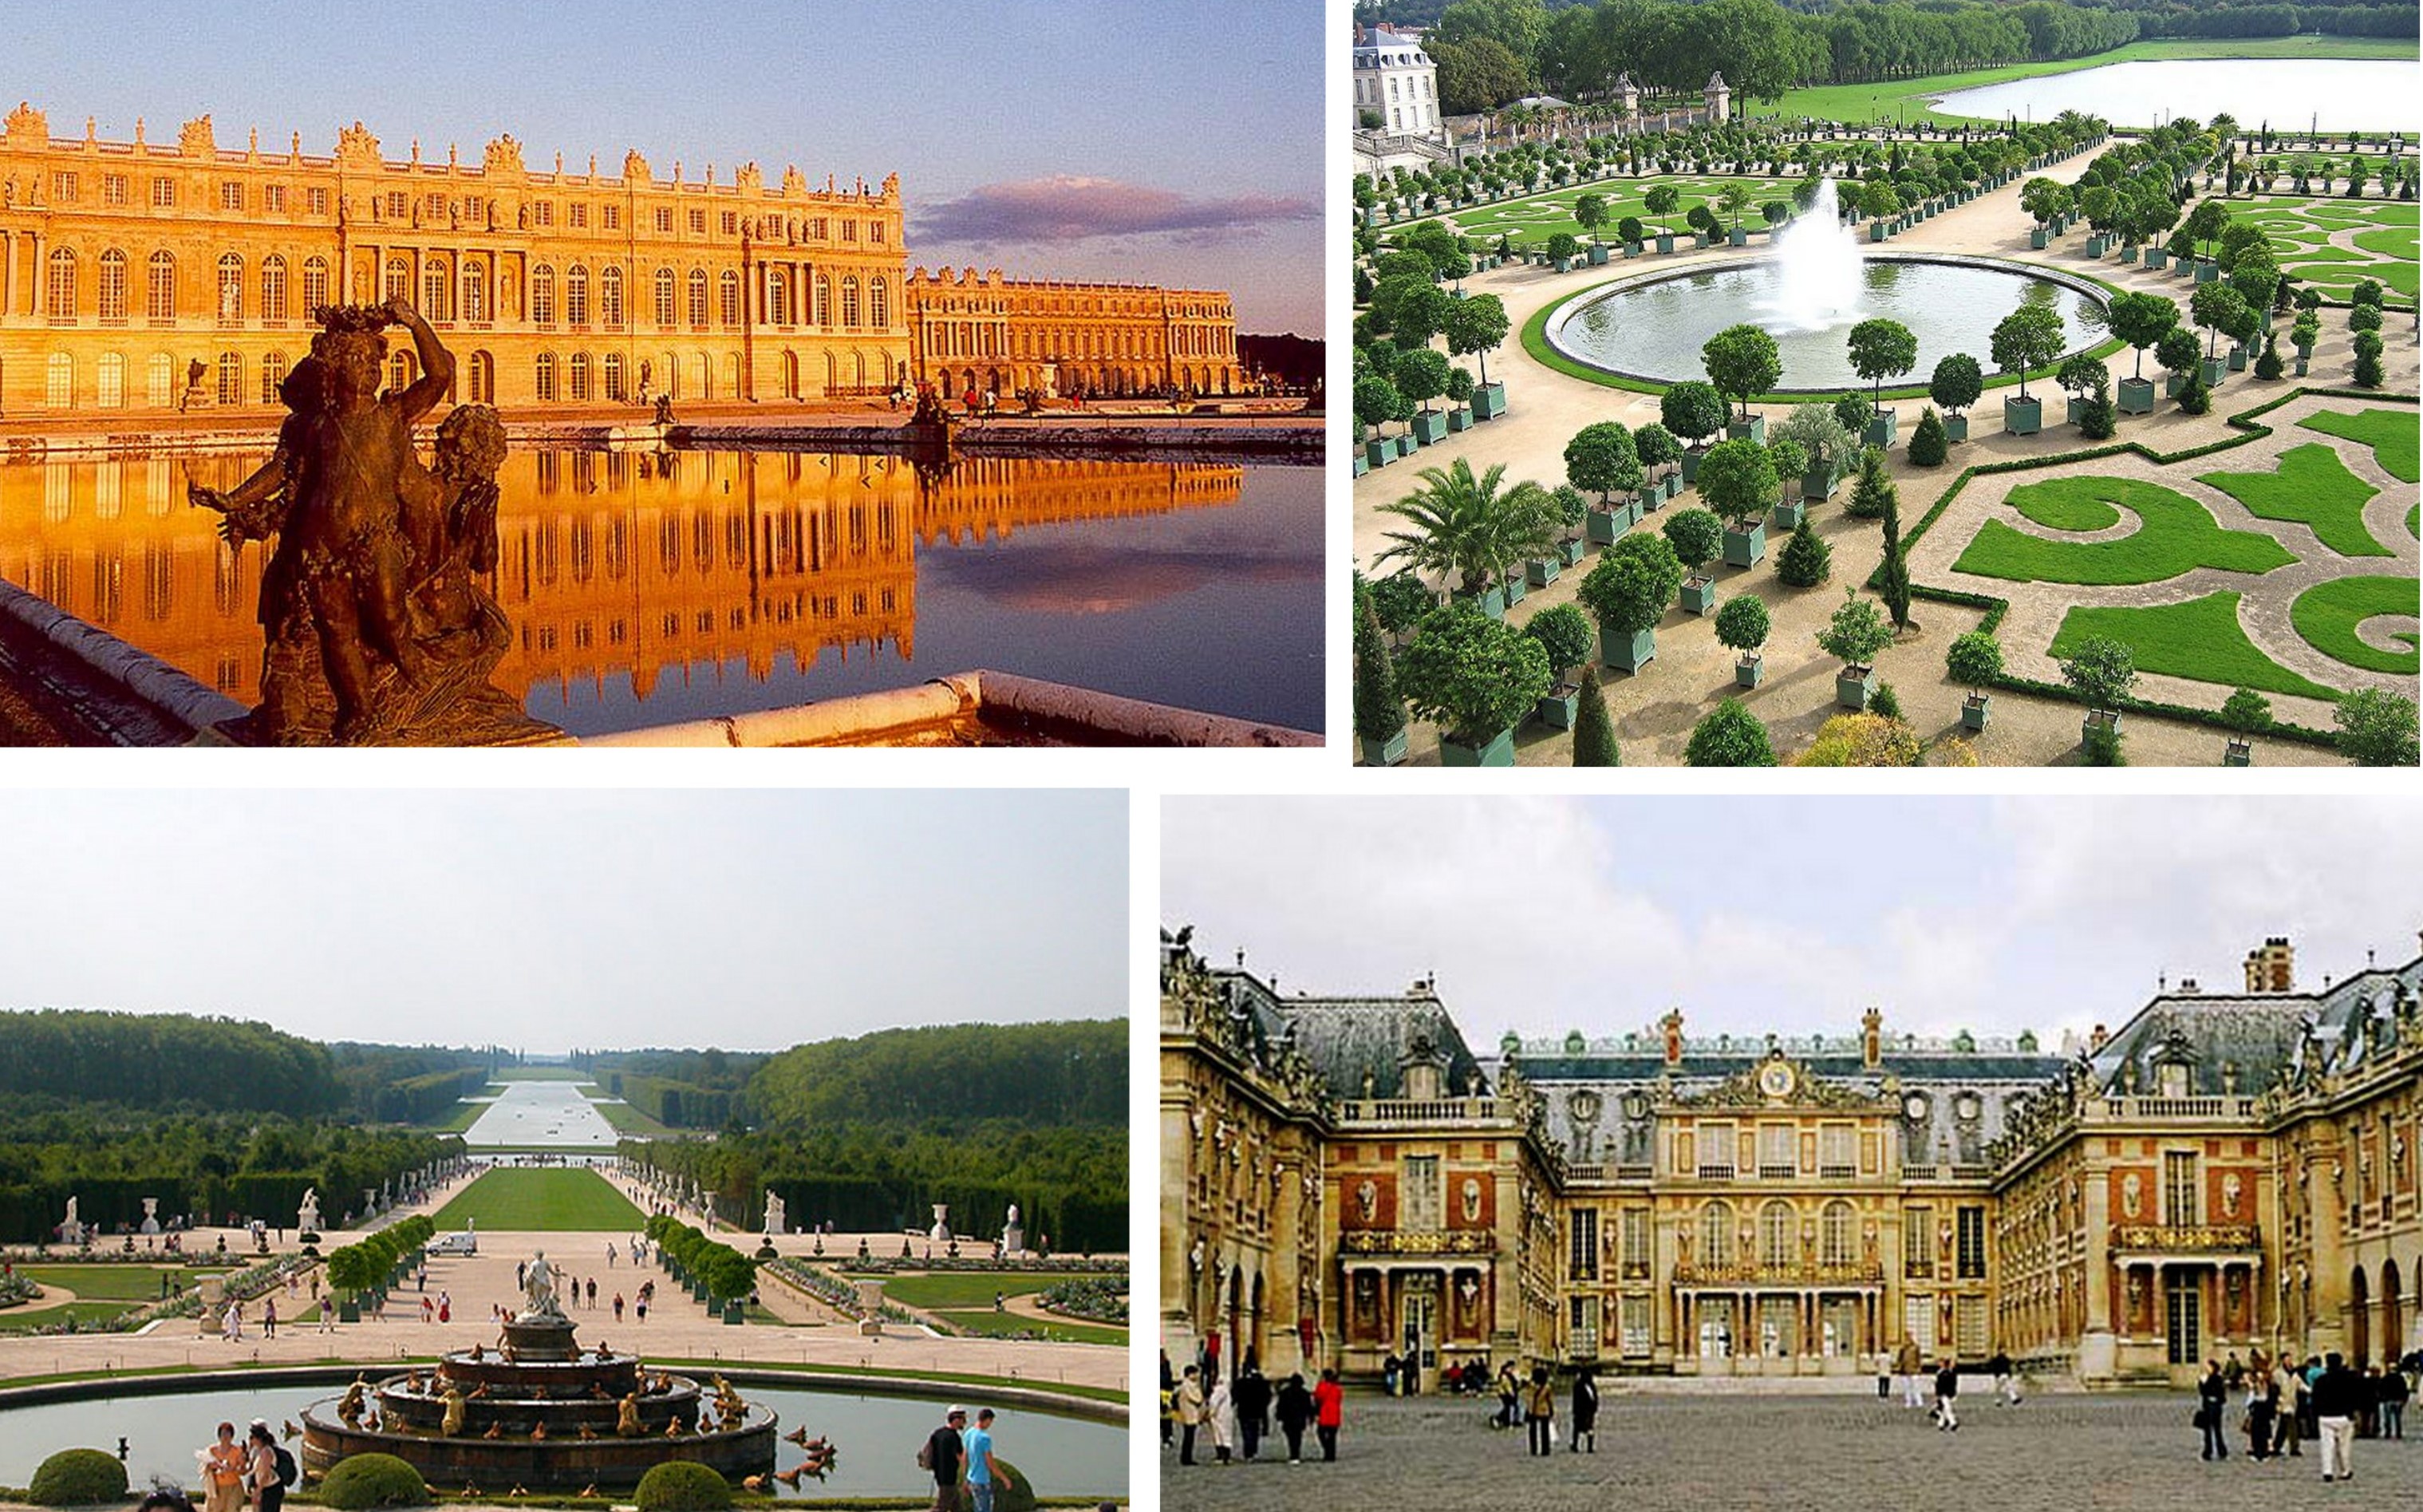 Время версаль. Версаль дворцово-парковый ансамбль. Версальский дворец Версаль классицизм. Дворец и парк в Версале Луи лево. Версальский дворец в пригороде Парижа.